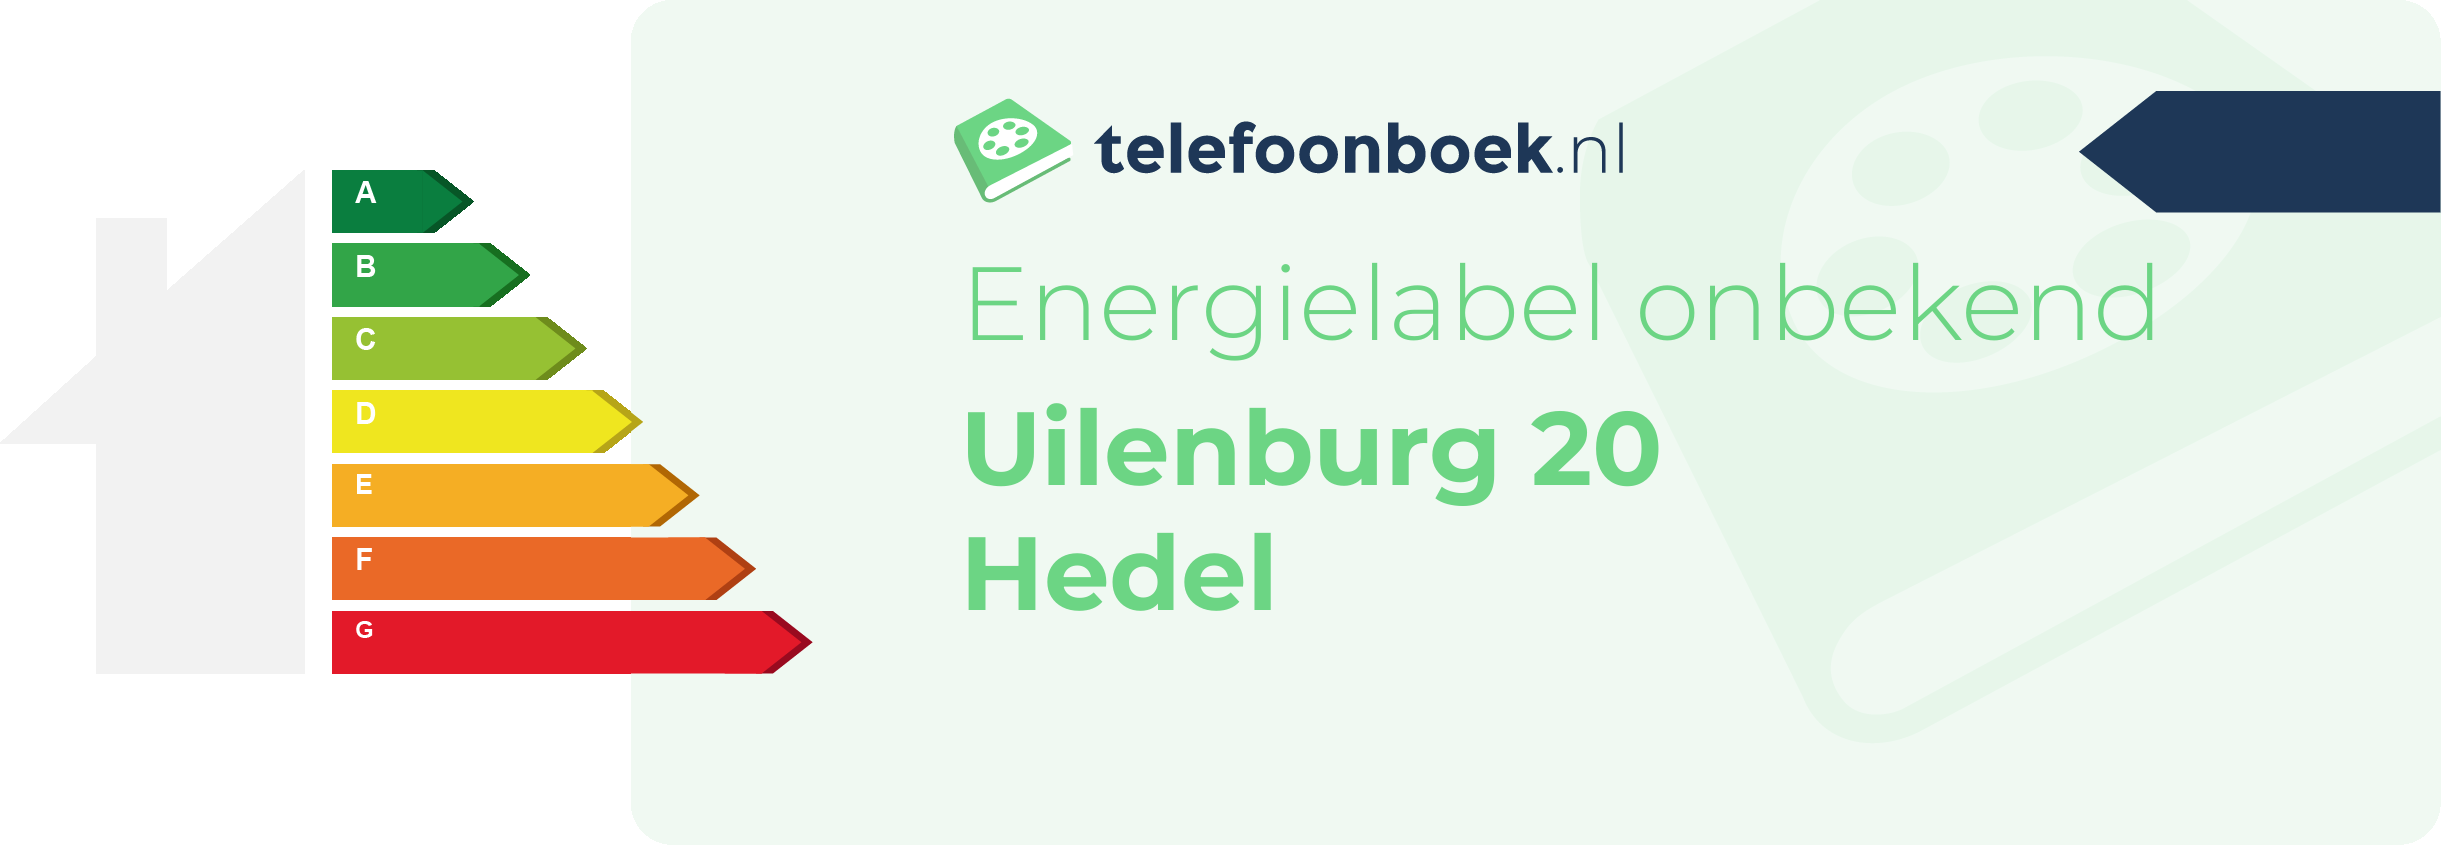 Energielabel Uilenburg 20 Hedel